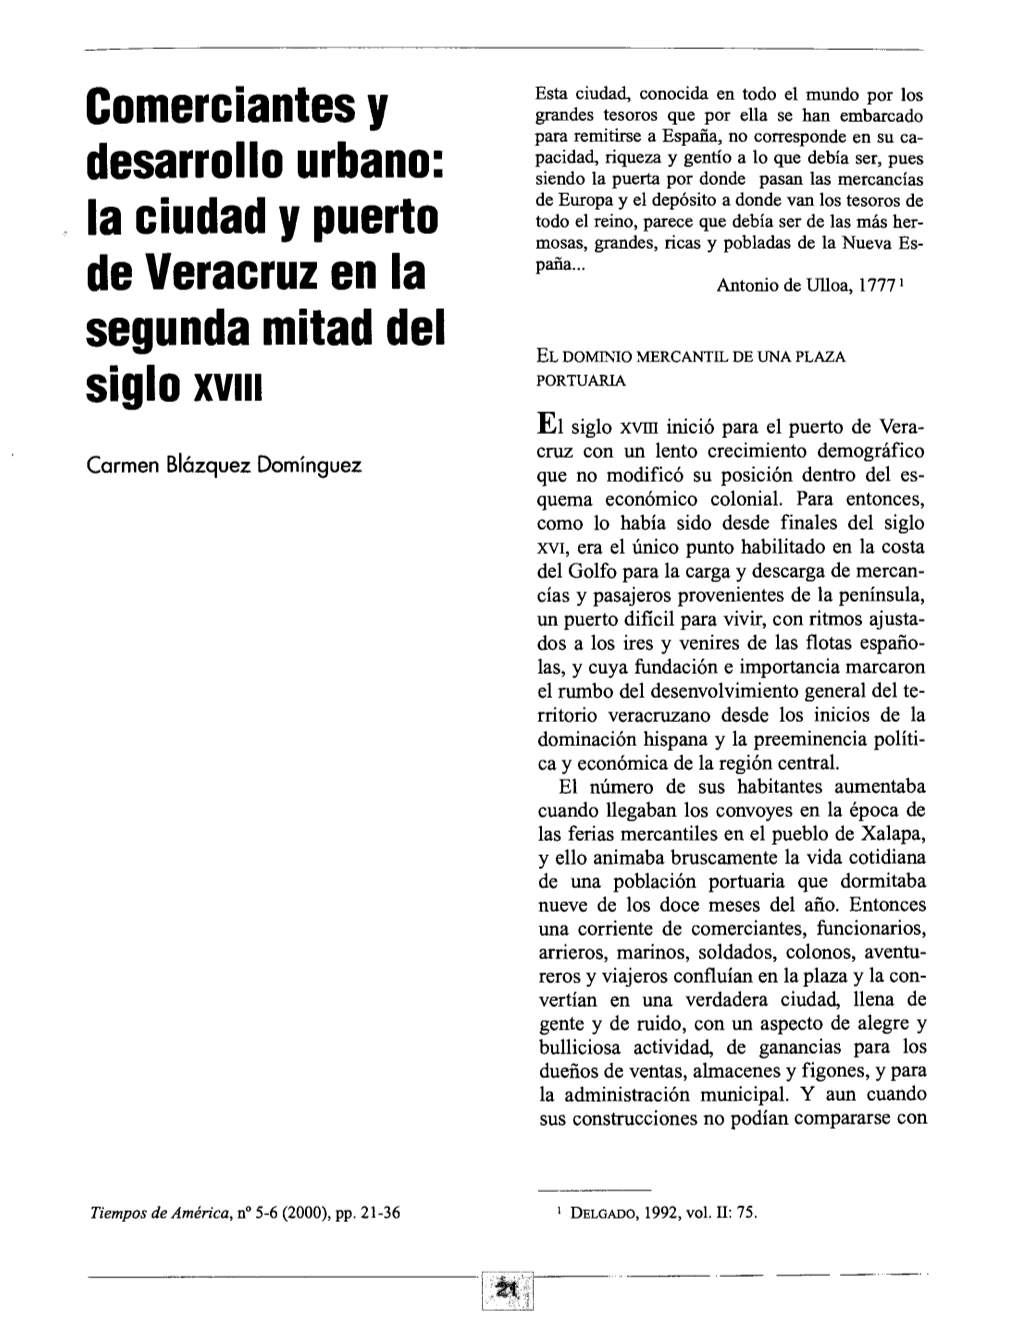 I La Ciudad Y Puerto De Veracruz En La Segunda Mitad Del Siglo XVIII